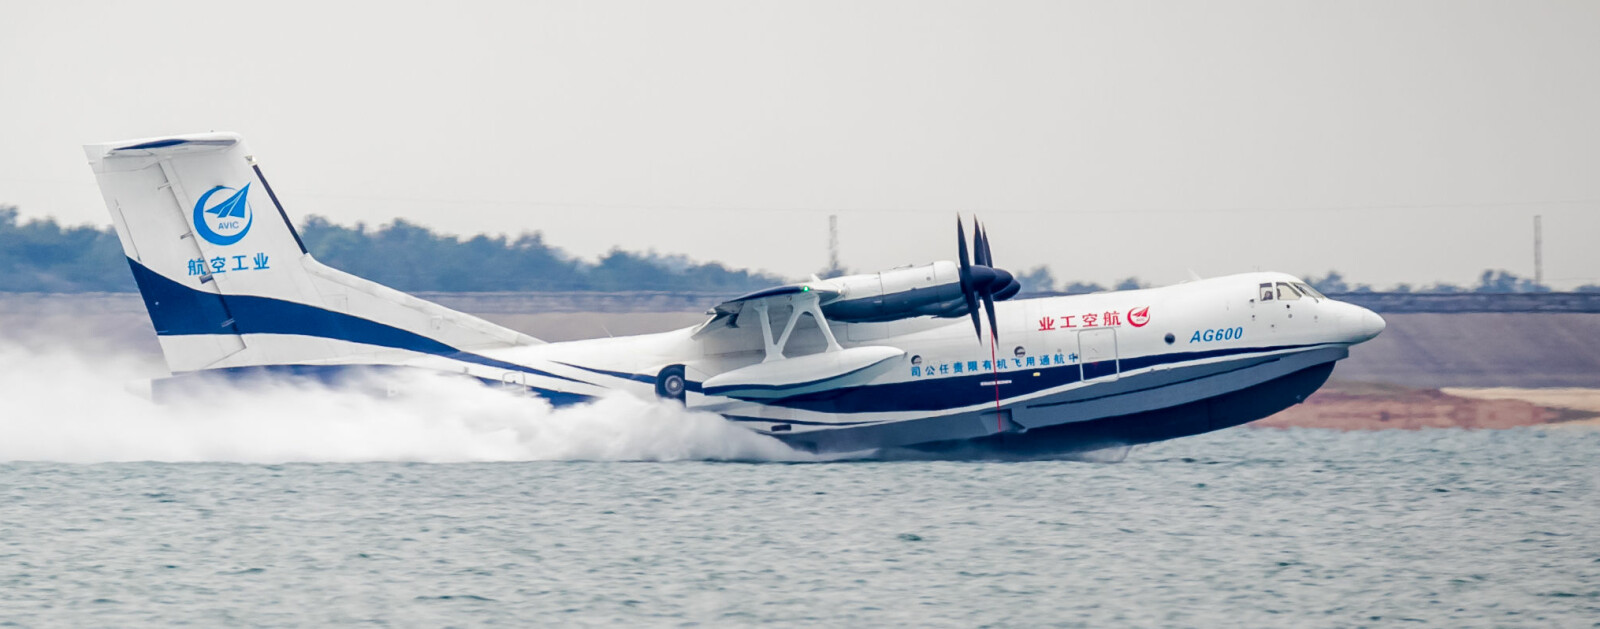 <b>VANNDRAGEN: </b>AG600 er verdens største amfibiefly. Den kan lande både til lands og til vanns.